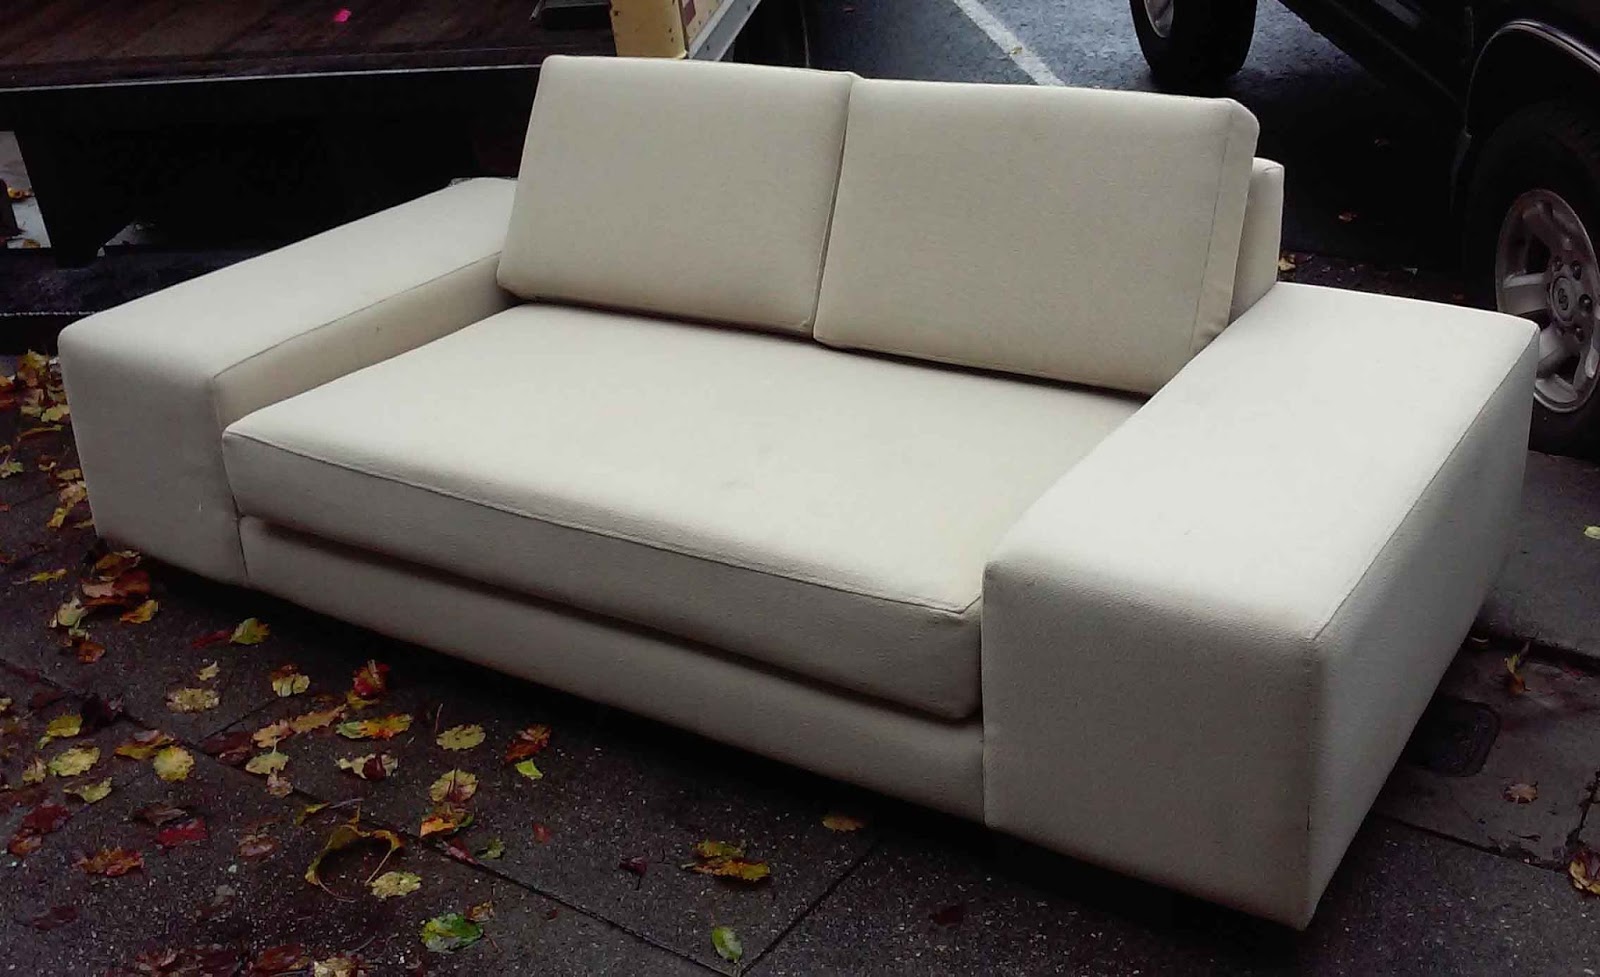 memory foam sofa bed review